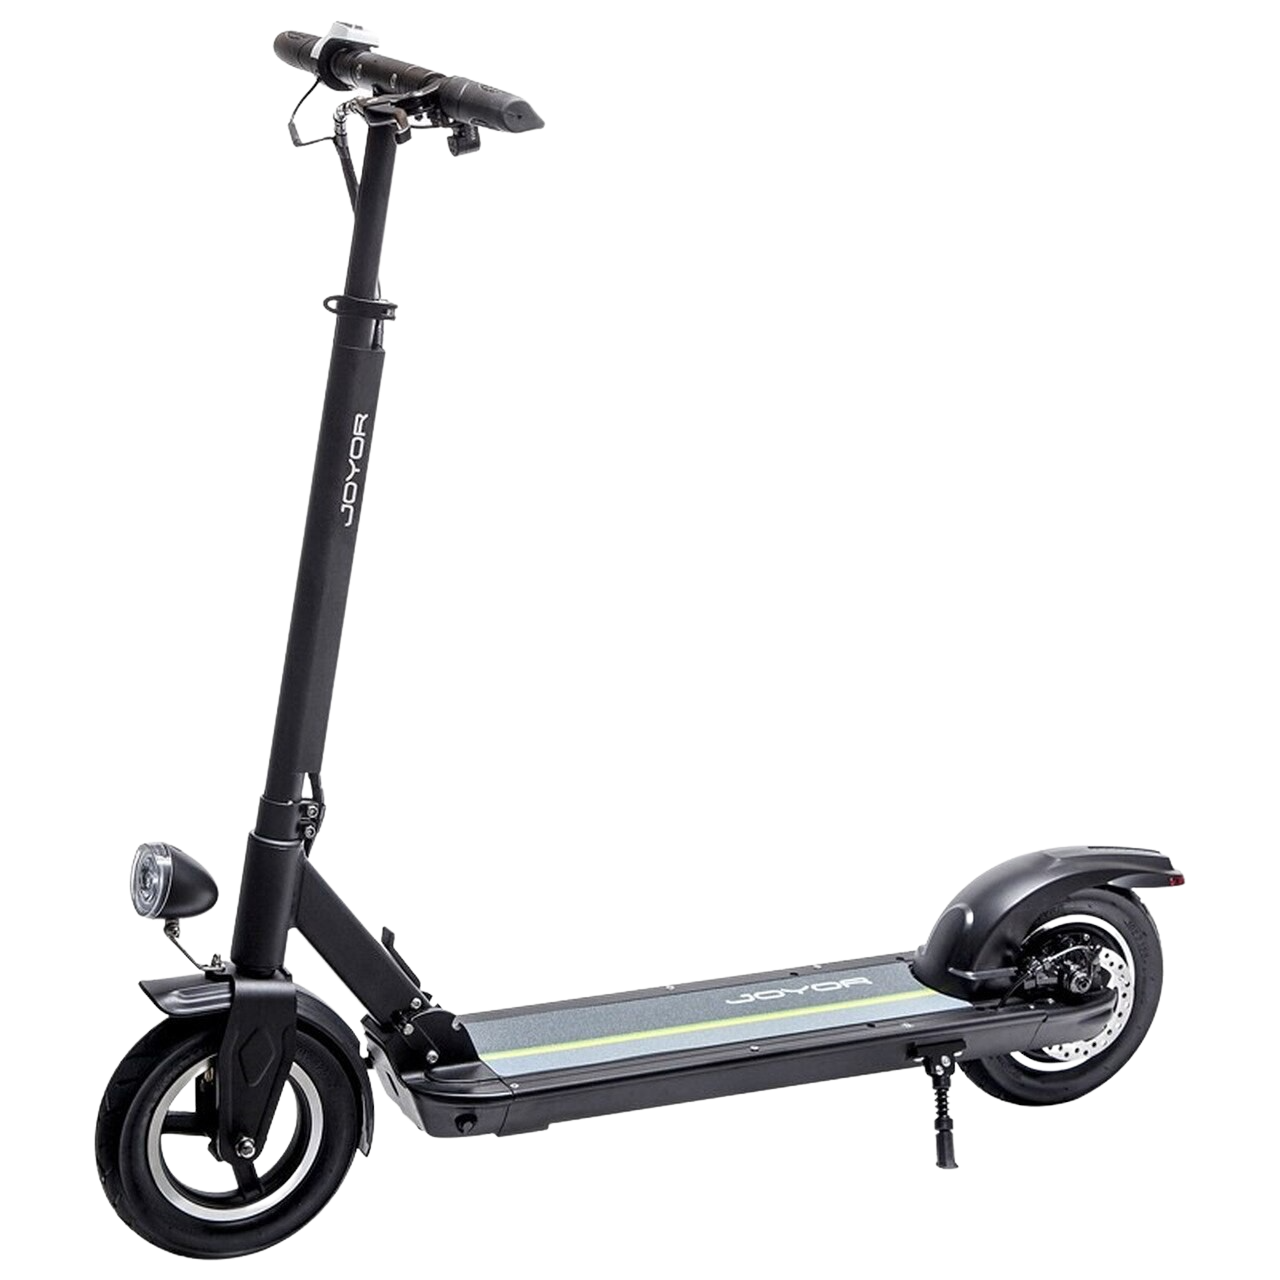 joyor scooter for Better Mobility 